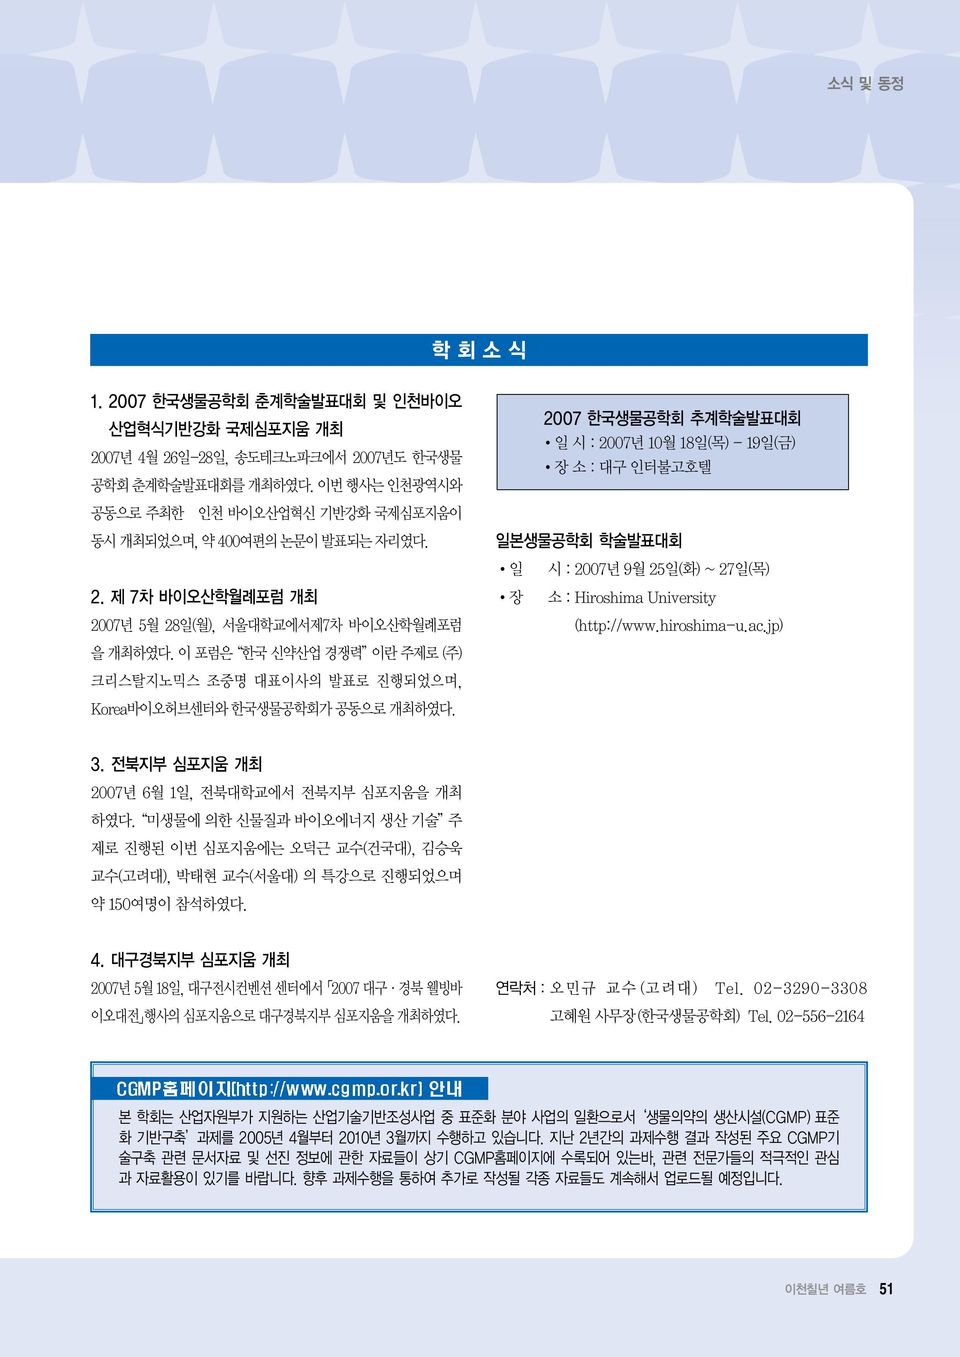 이 포럼은 한국 신약산업 경쟁력 이란 주제로 (주) 크리스탈지노믹스 조중명 대표이사의 발표로 진행되었으며, Korea바이오허브센터와 한국생물공학회가 공동으로 개최하였다.